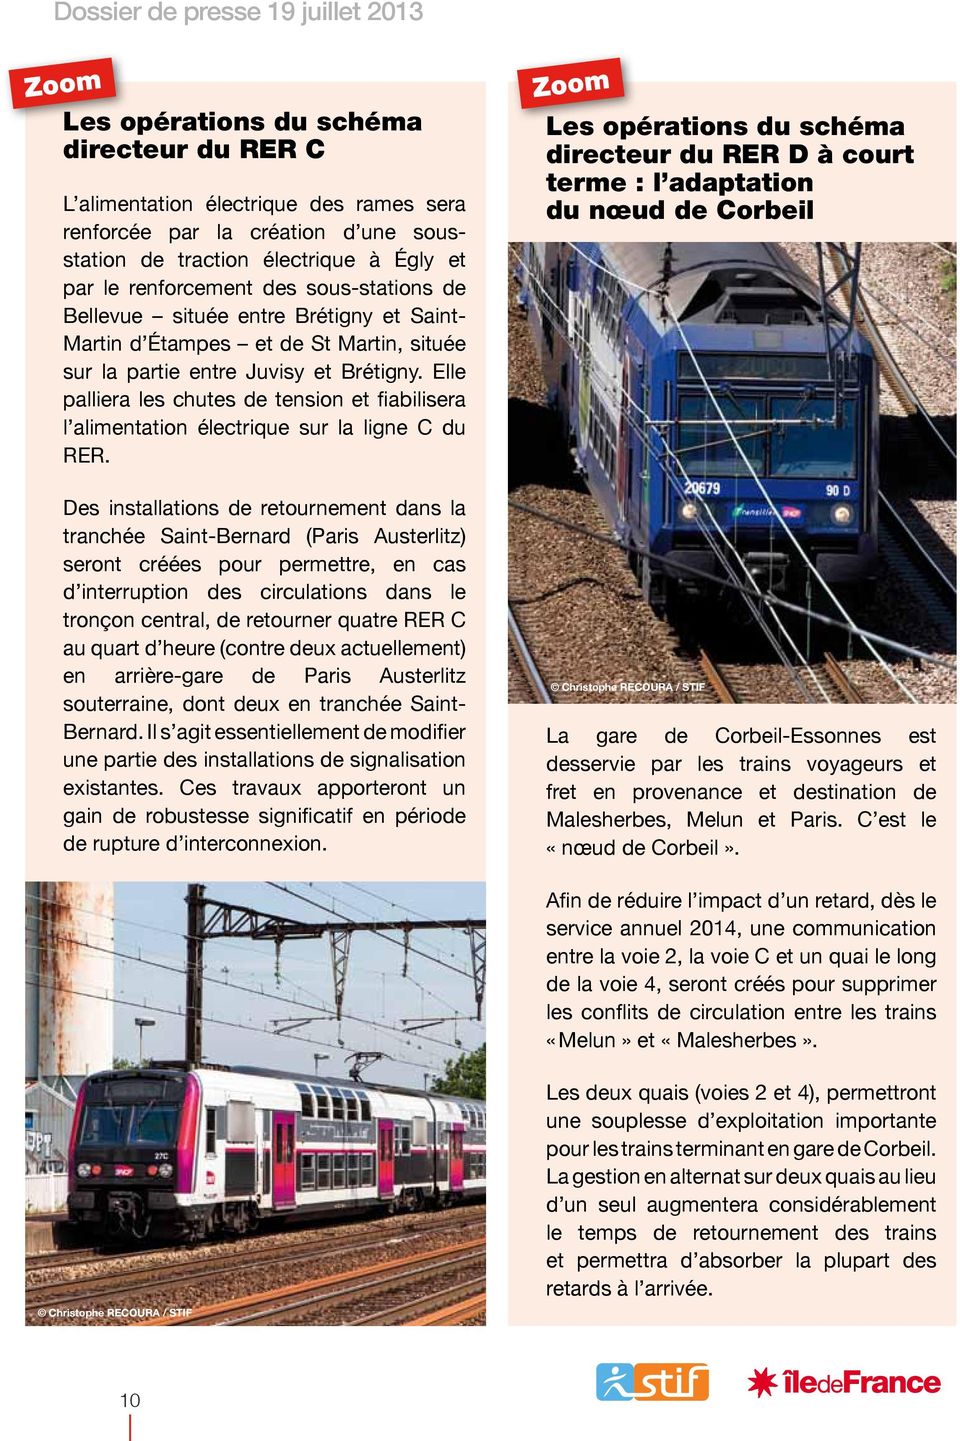 Elle palliera les chutes de tension et fiabilisera l alimentation électrique sur la ligne C du RER.